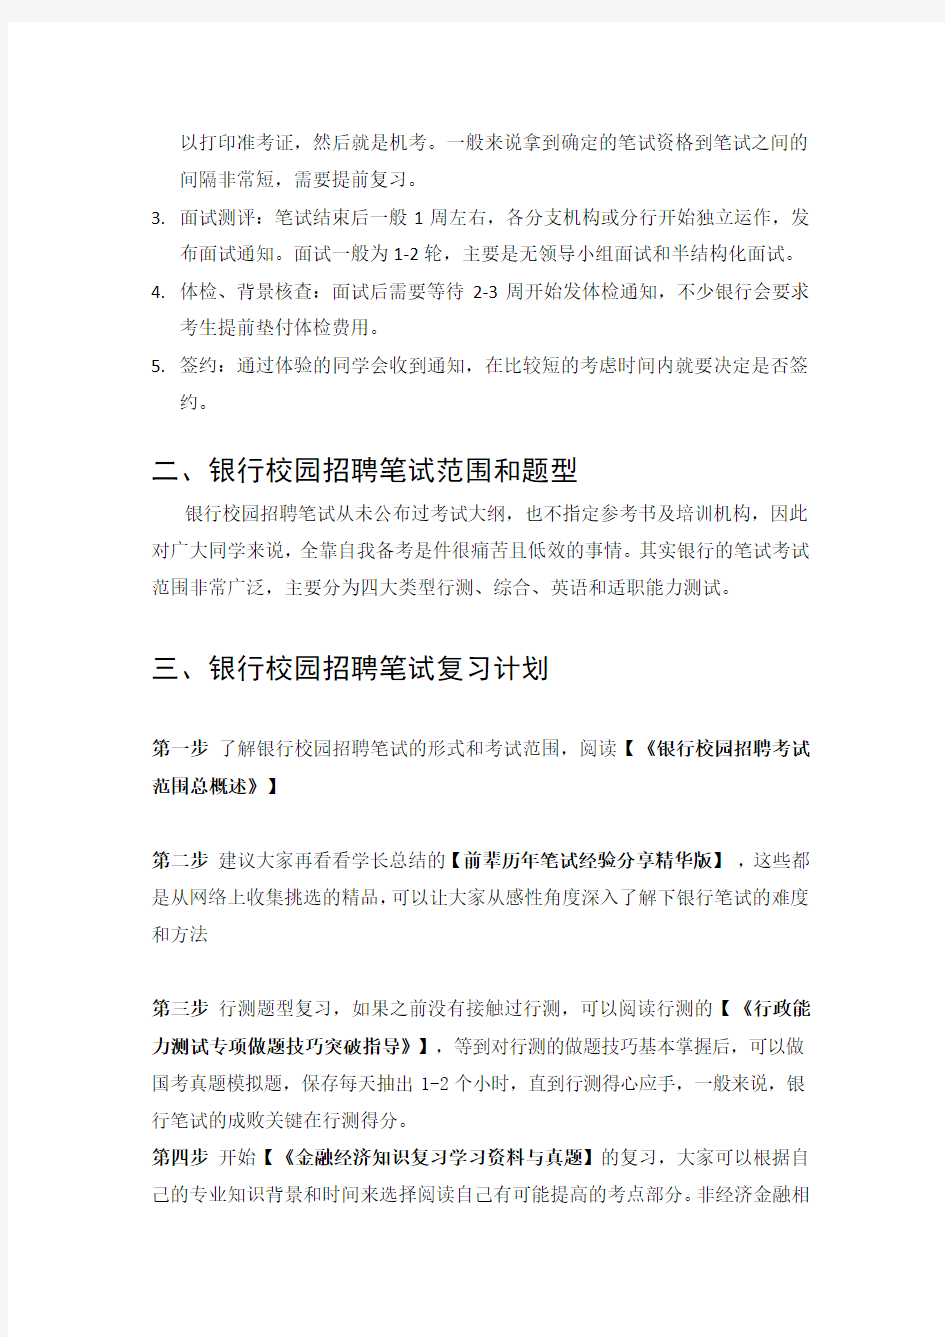 中国工商银行2015年校园招聘考试笔试题内容试卷题型历年考试真题